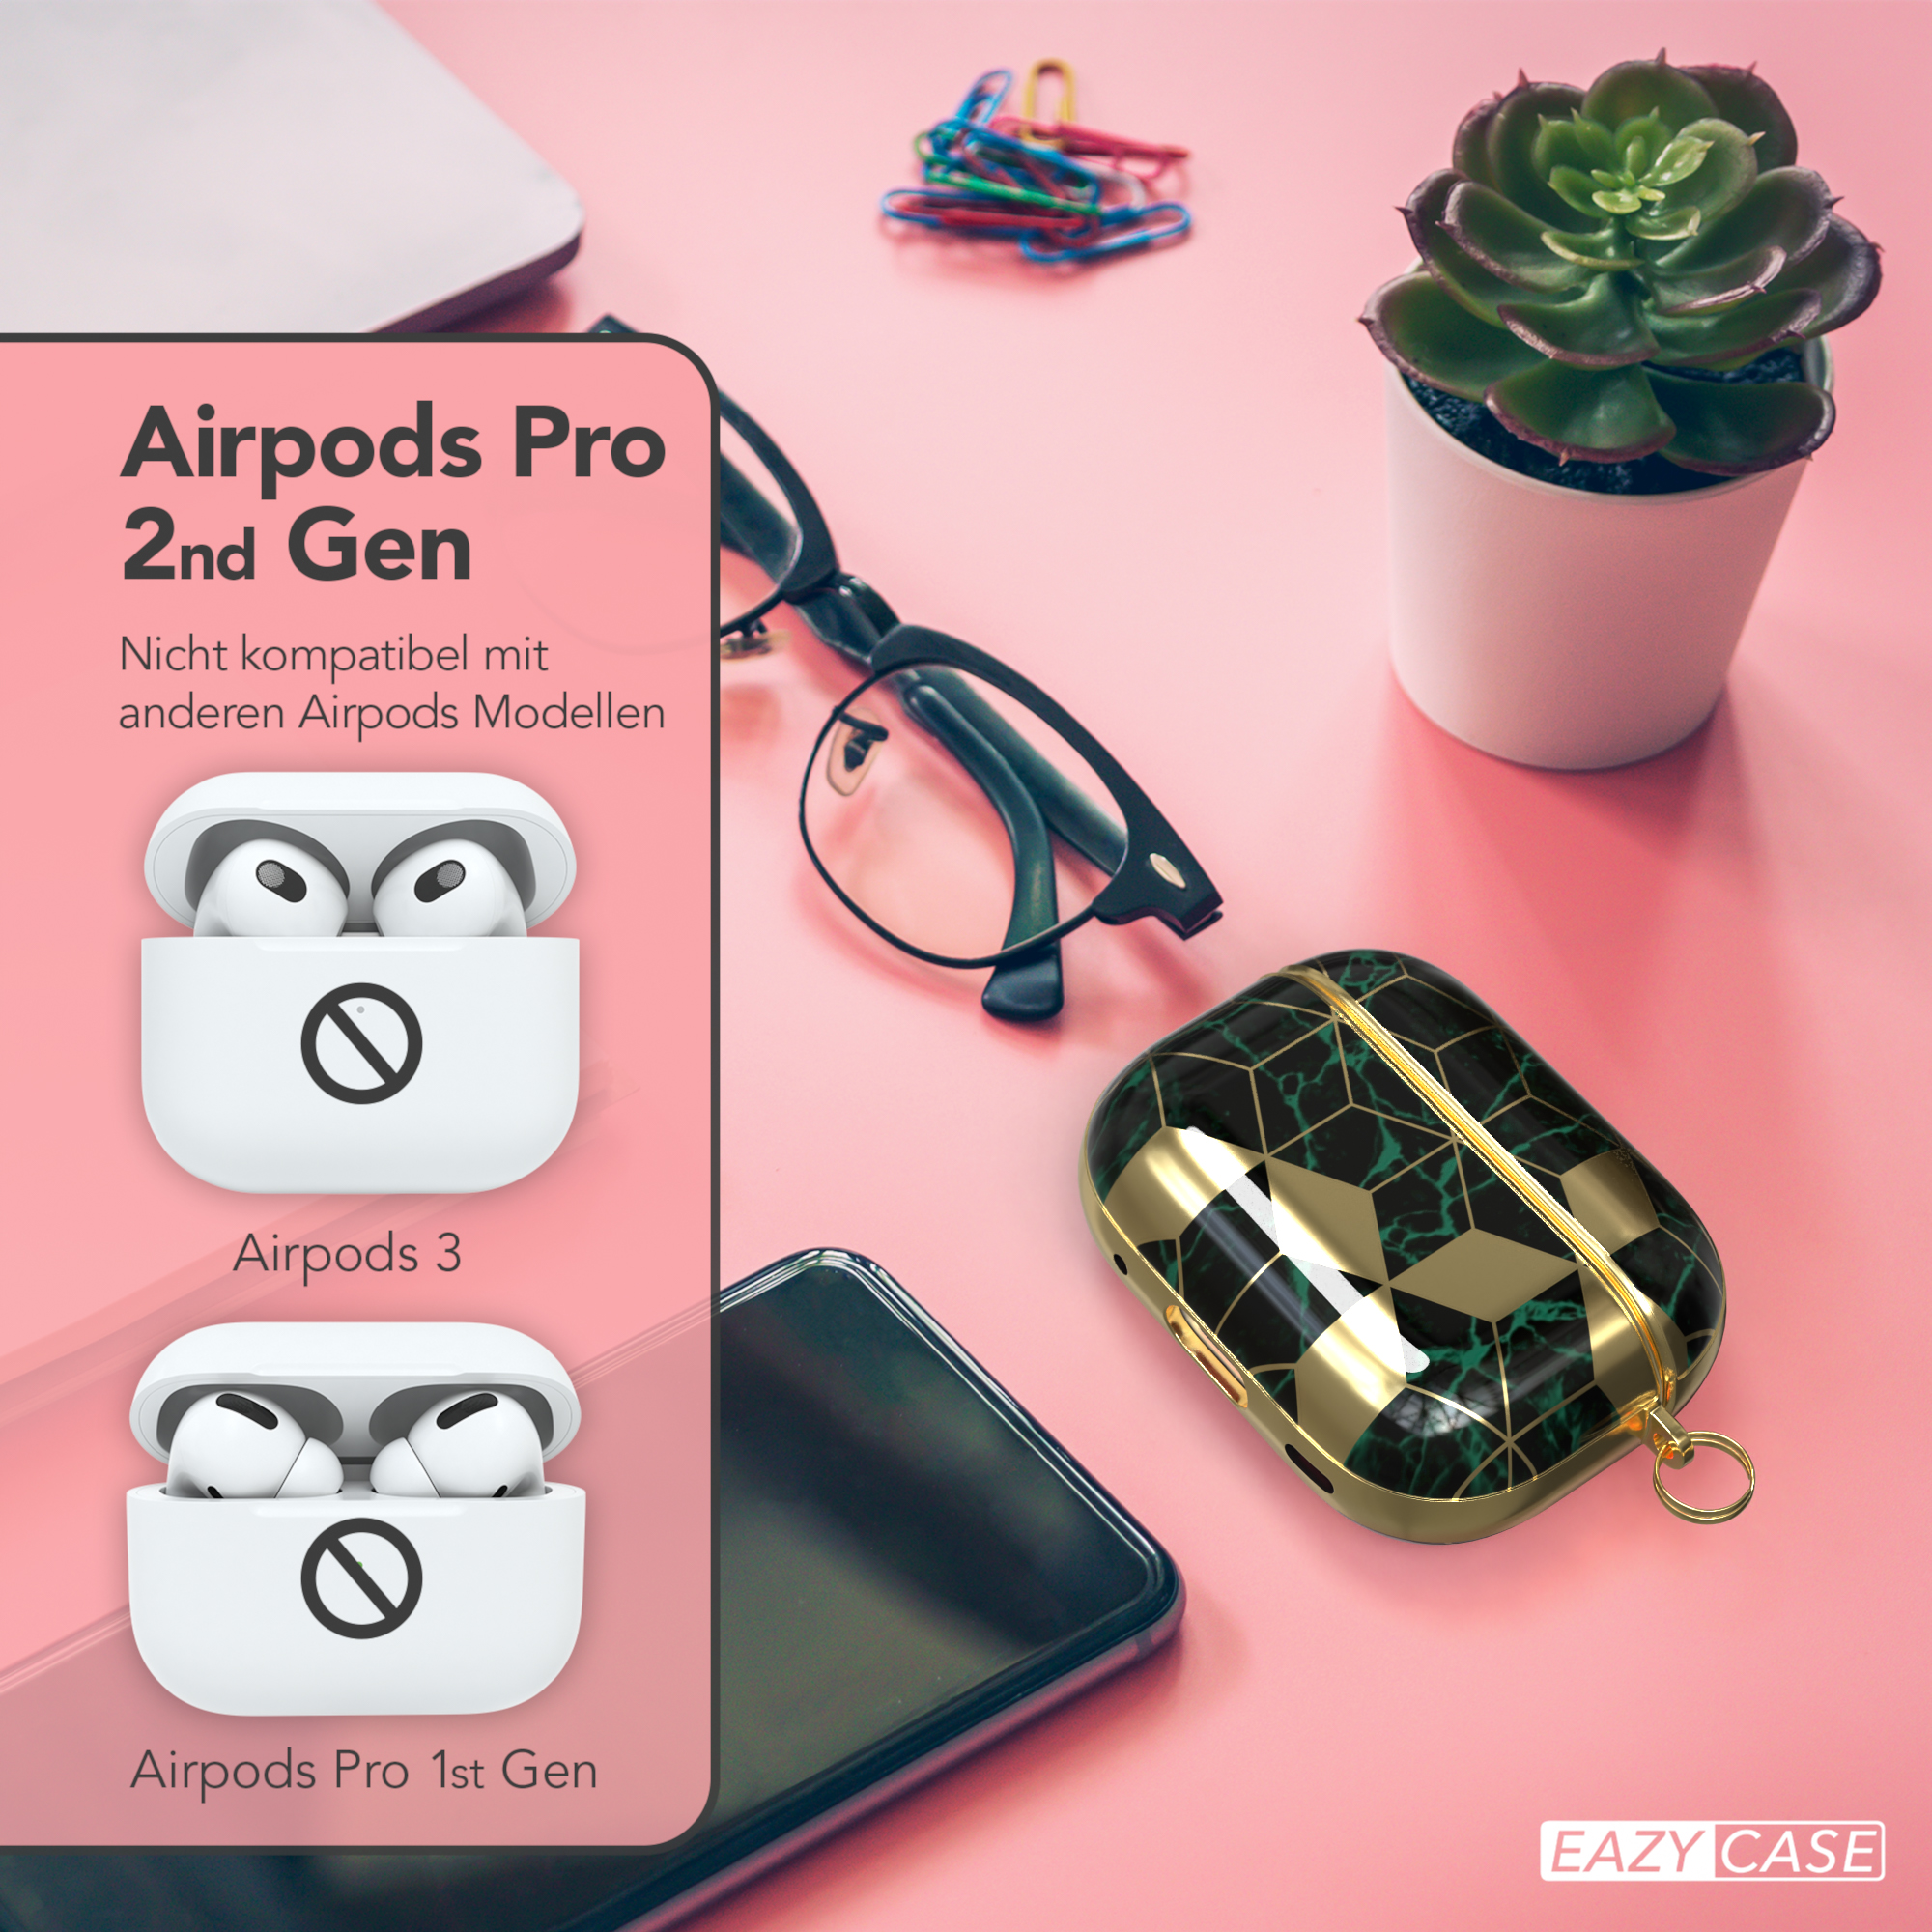 EAZY CASE AirPods Pro passend Motiv Grün für: Apple Gold IMD Schutzhülle / 2 Case Sleeve